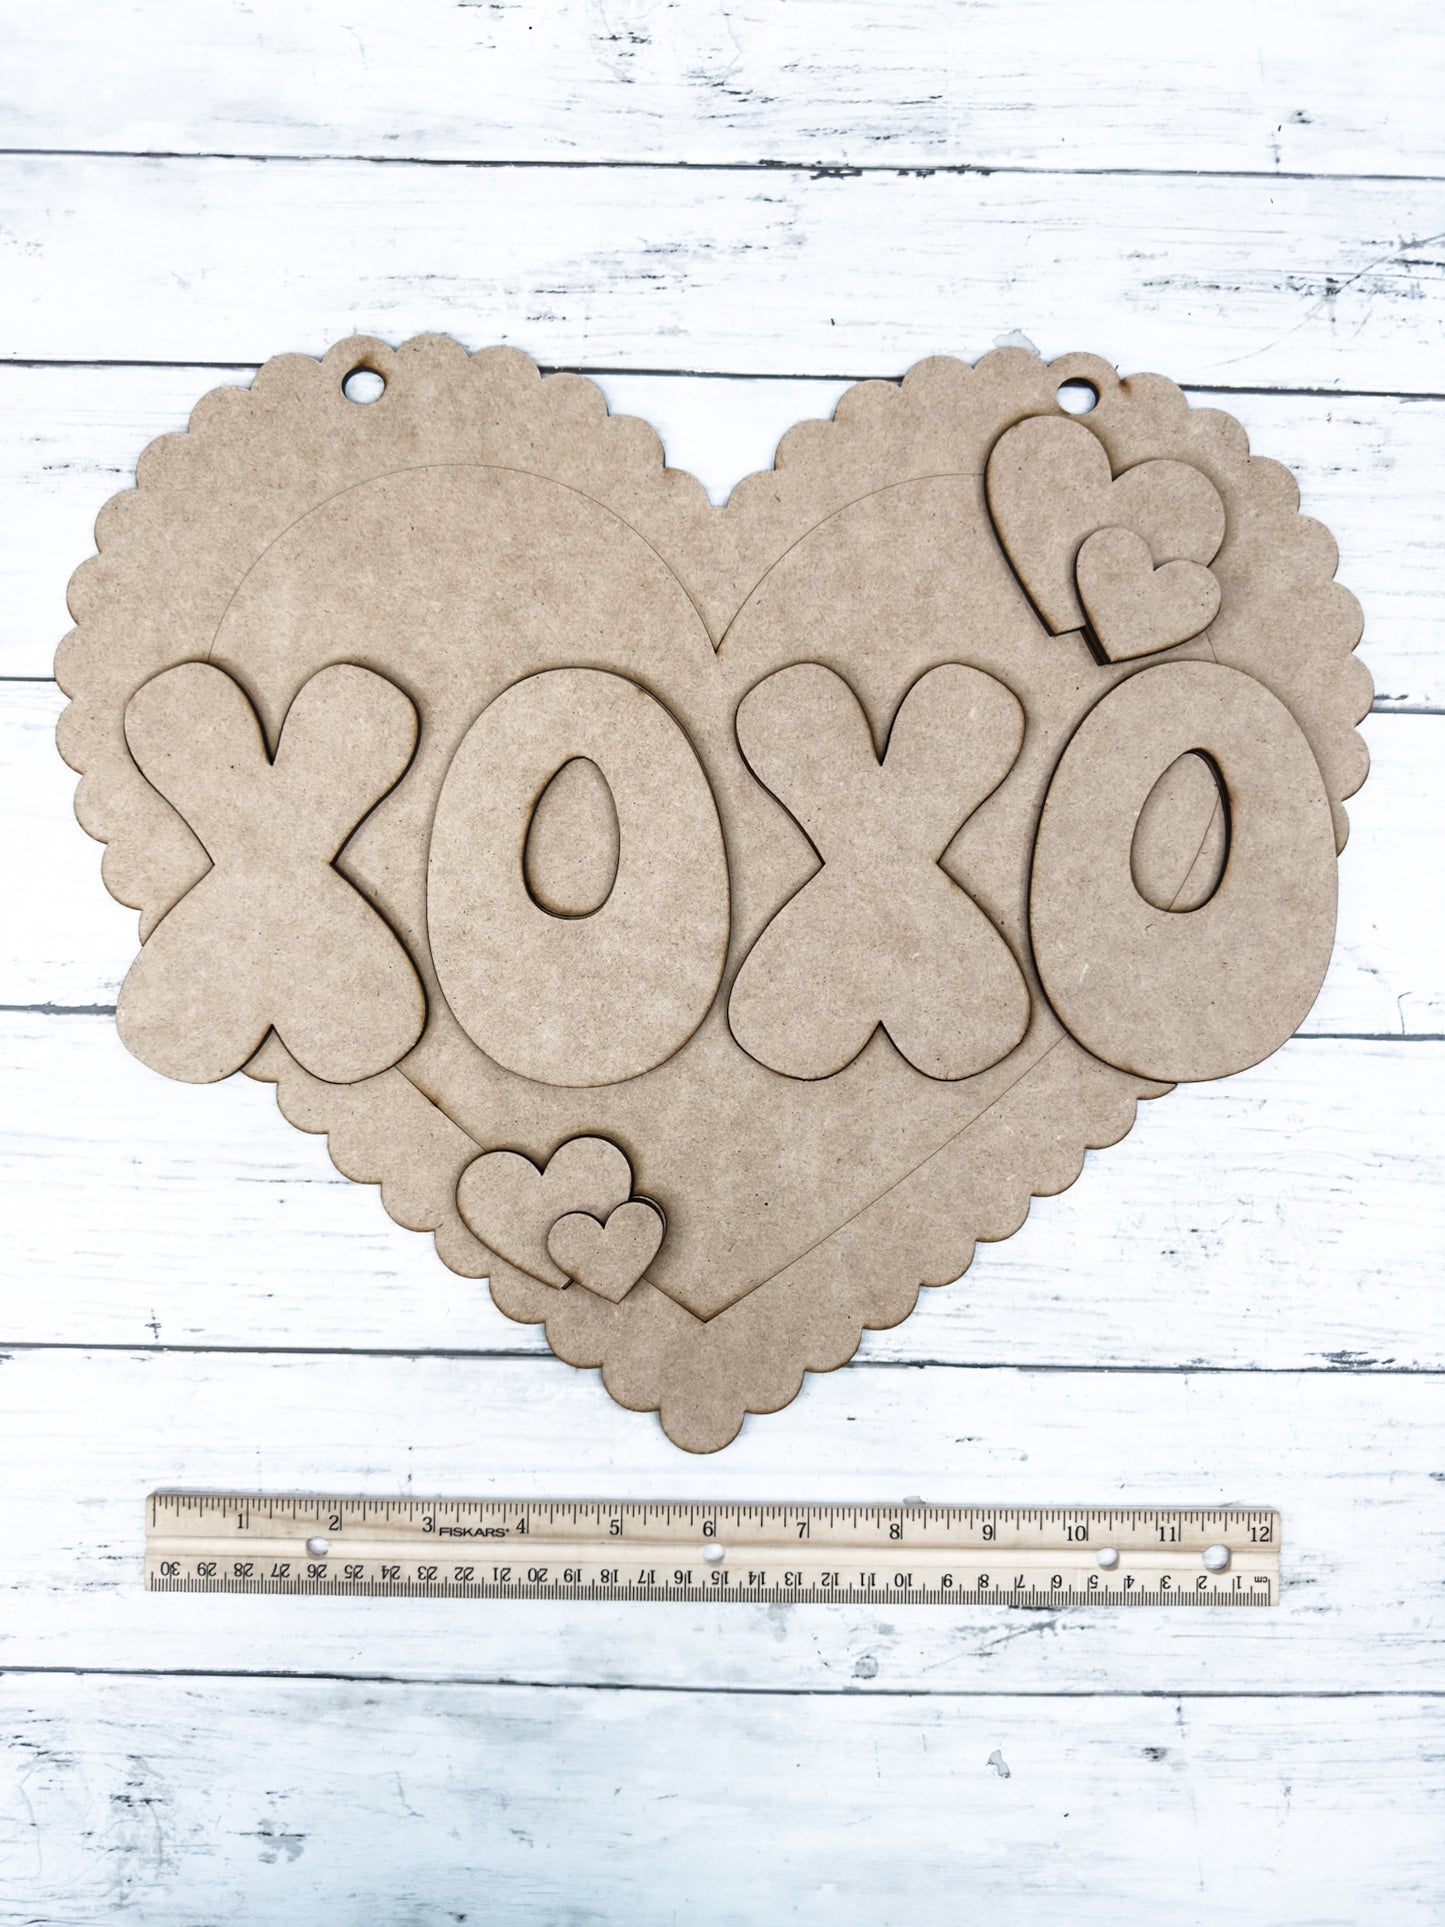 XOXO Heart Door Hanger Sign DIY Kit